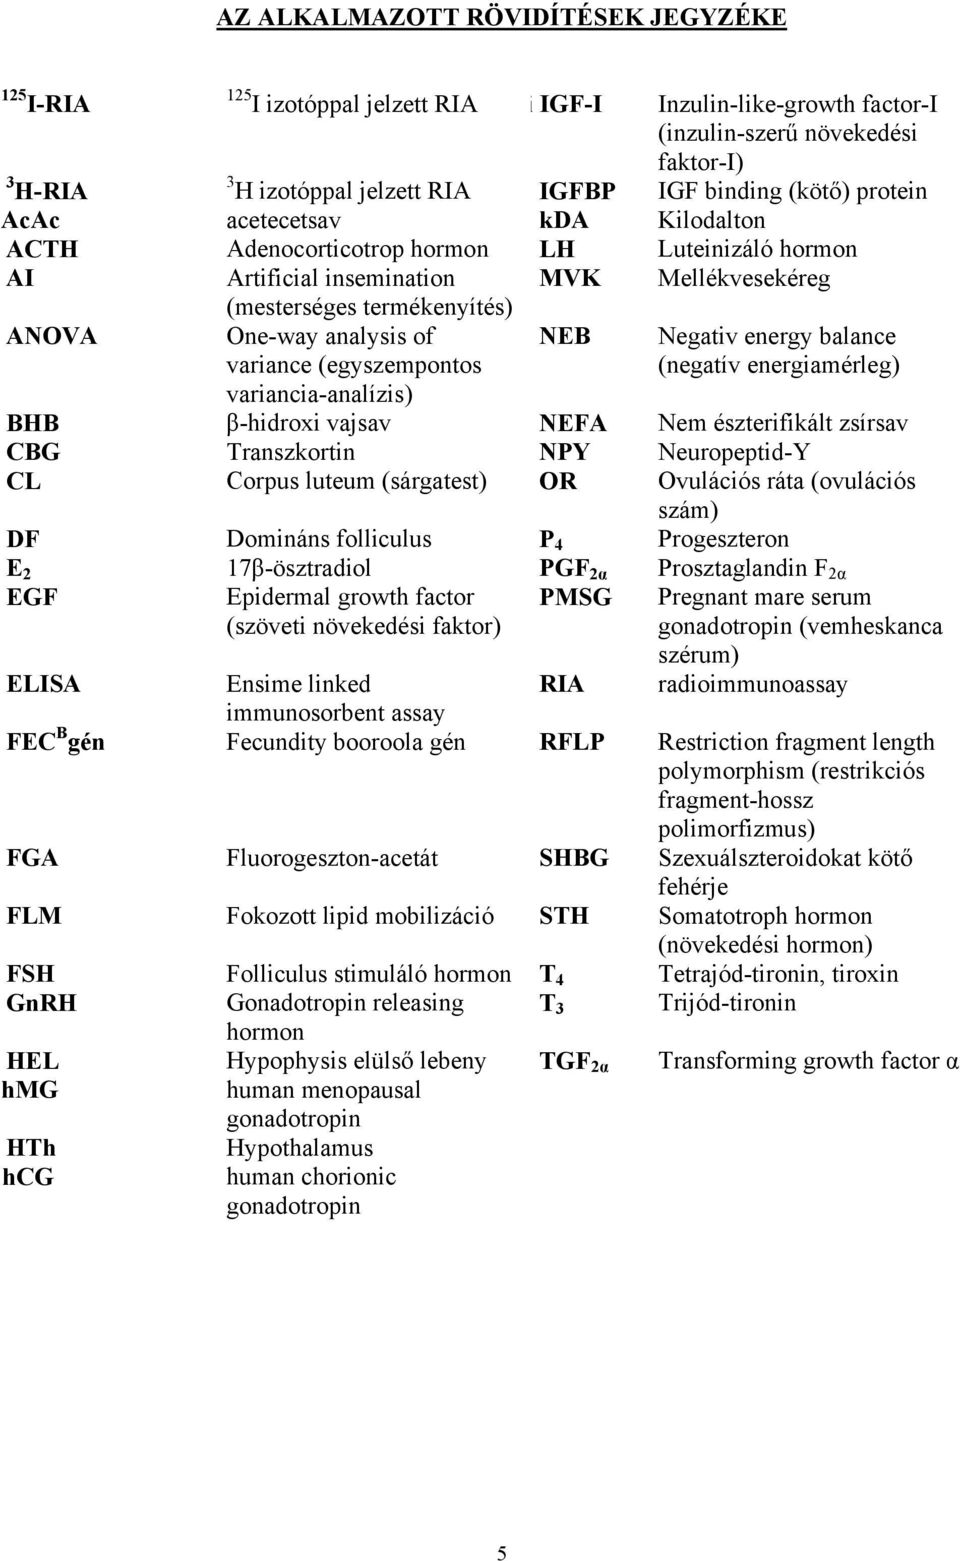 variance (egyszempontos variancia-analízis) NEB Negativ energy balance (negatív energiamérleg) BHB β-hidroxi vajsav NEFA Nem észterifikált zsírsav CBG Transzkortin NPY Neuropeptid-Y CL Corpus luteum